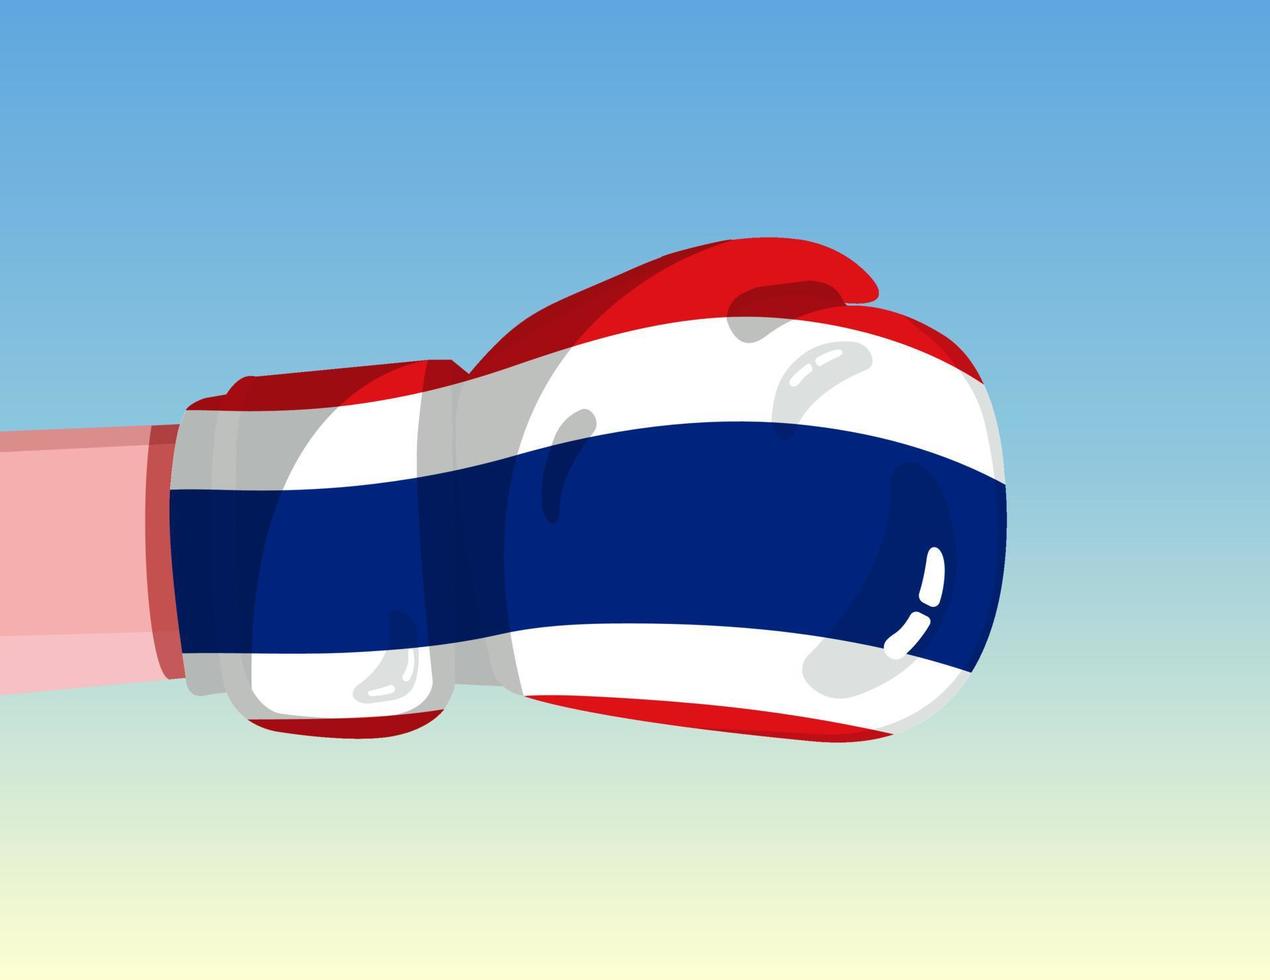 Flagge von Thailand auf Boxhandschuh. Konfrontation zwischen Ländern mit Wettbewerbsmacht. beleidigende Haltung. Gewaltenteilung. vorlagenfertiges Design. vektor